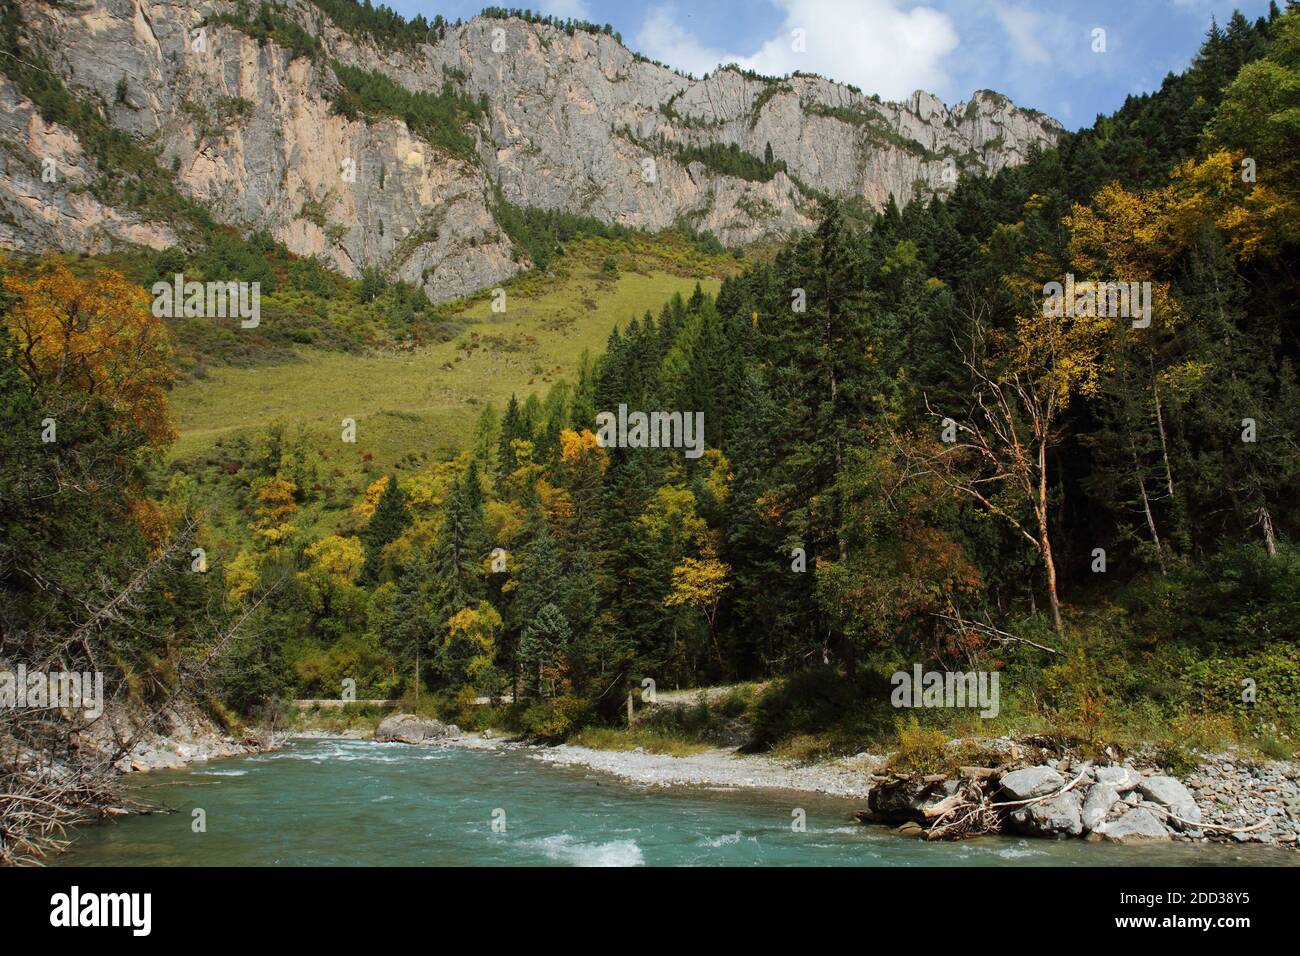 Gansu province zhuoni valley gully Stock Photo